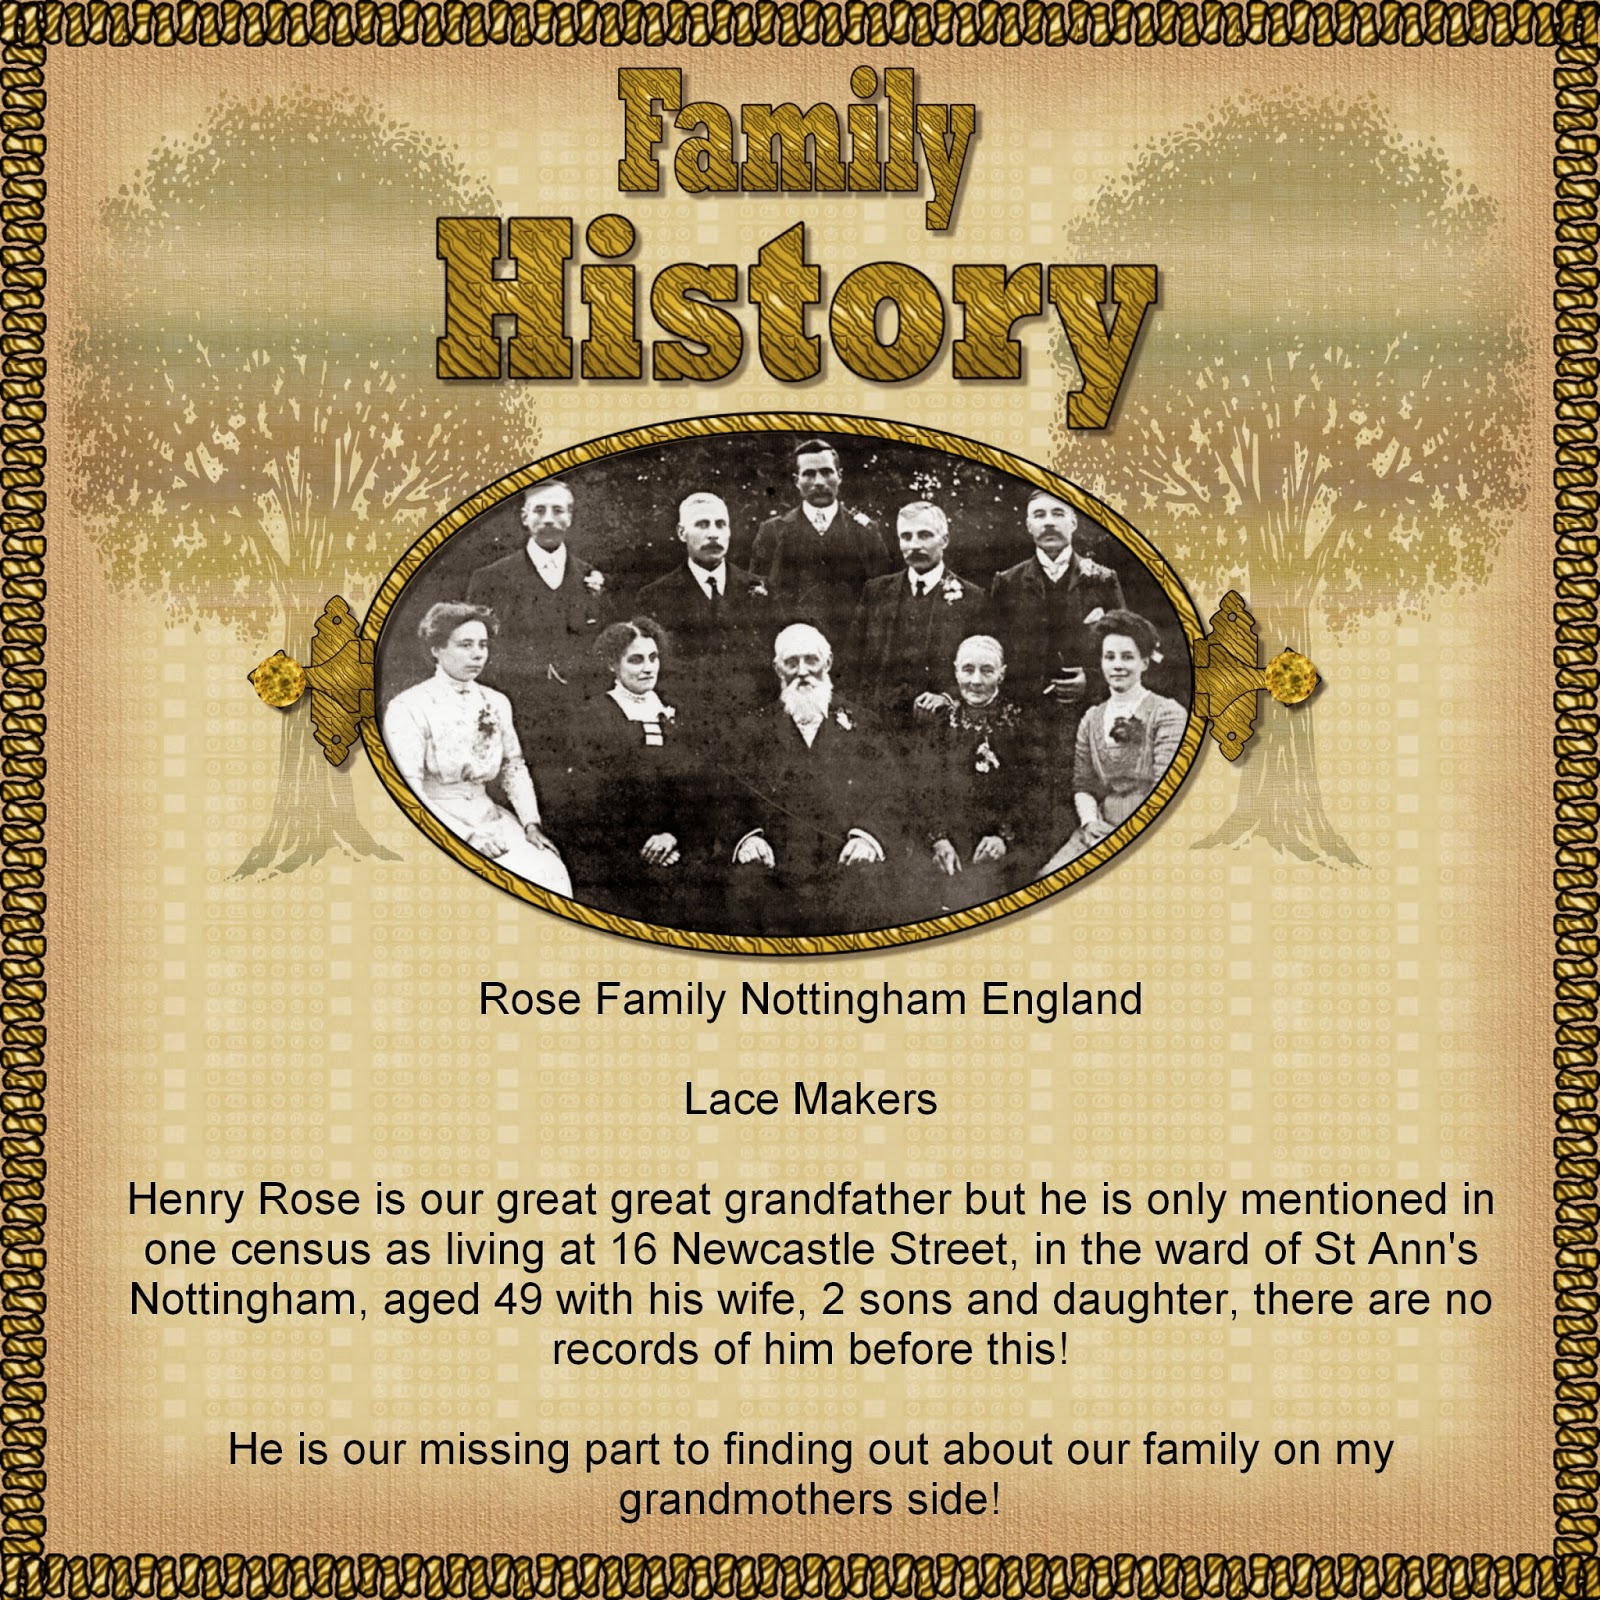 Family History